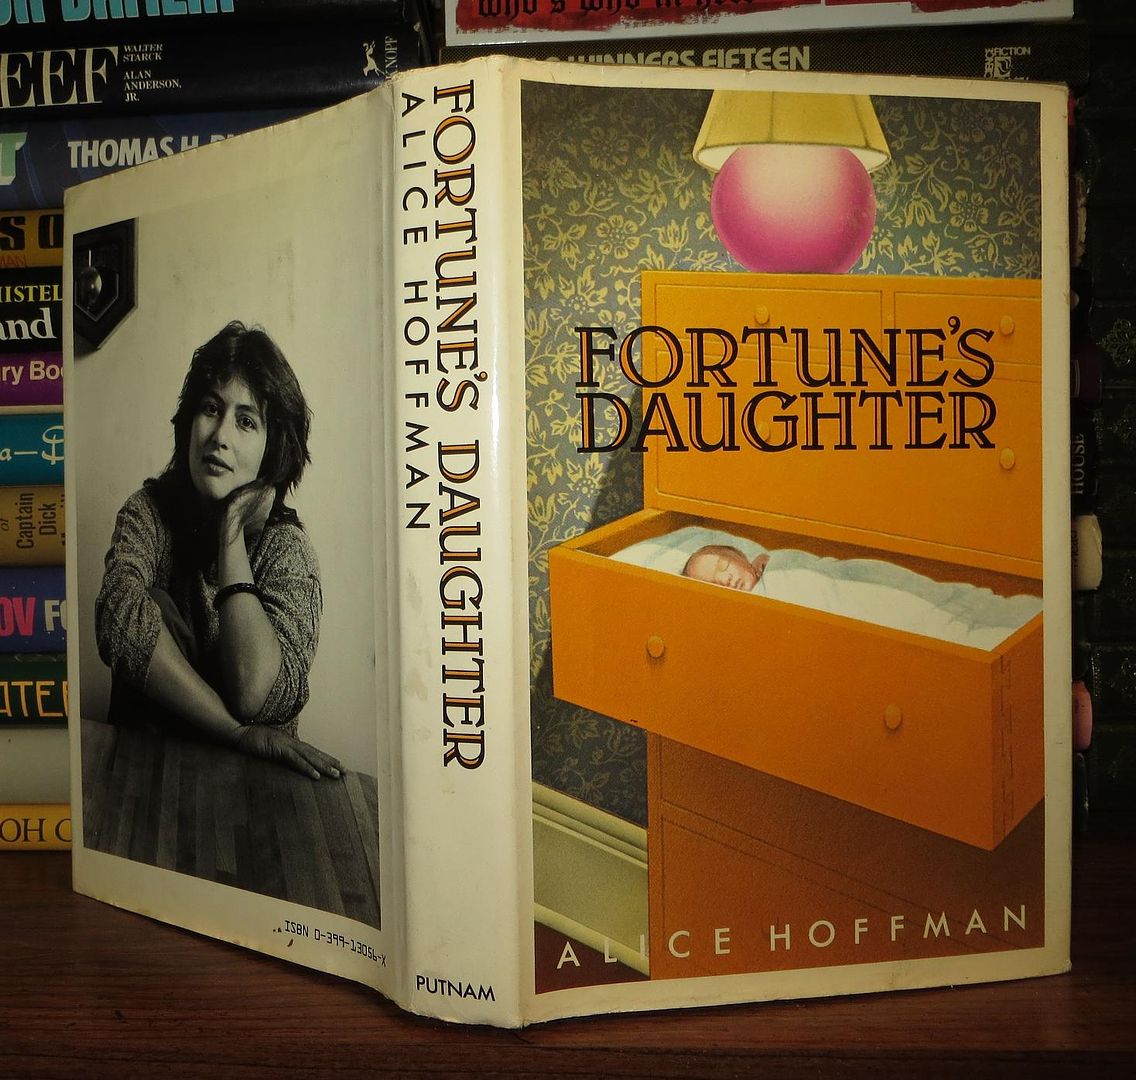 HOFFMAN, ALICE S. - Fortune's Daughter Fortunes